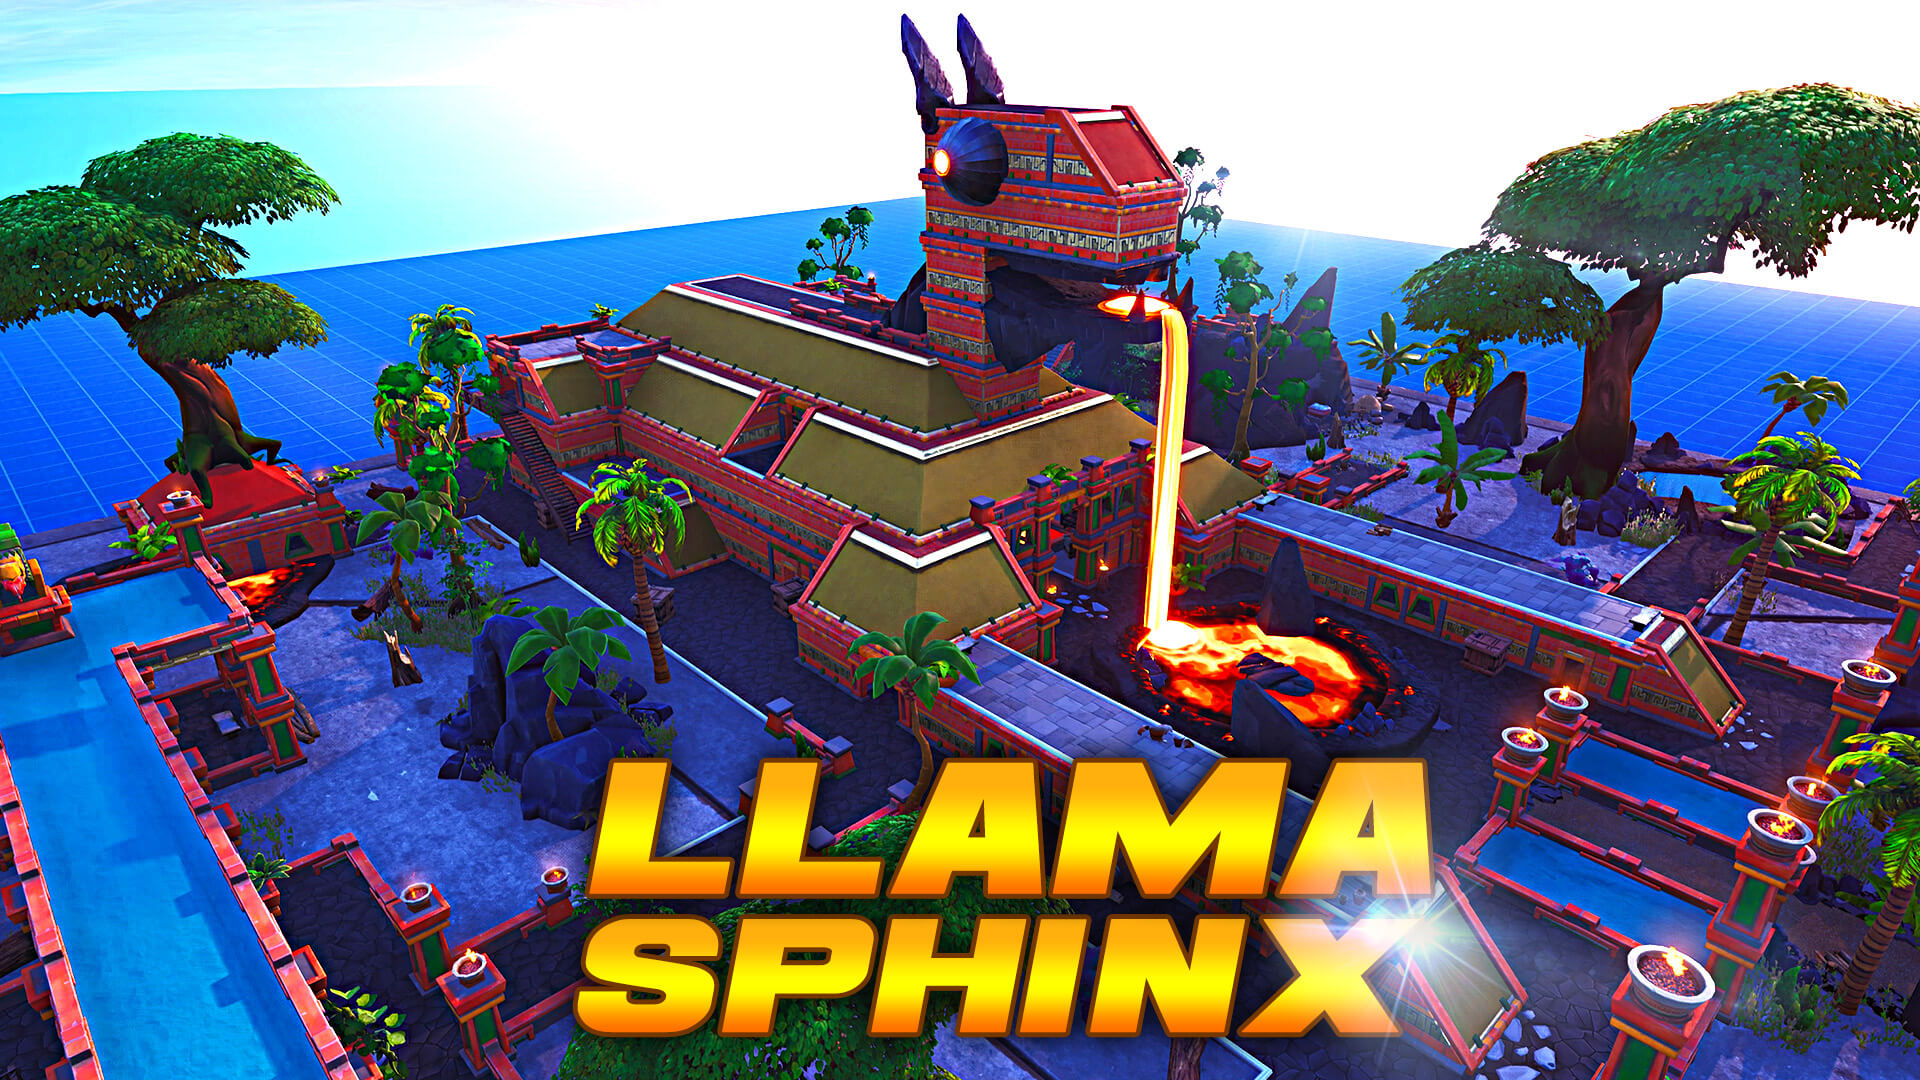 llama sphinx - fortnite creative codes escape the ice king